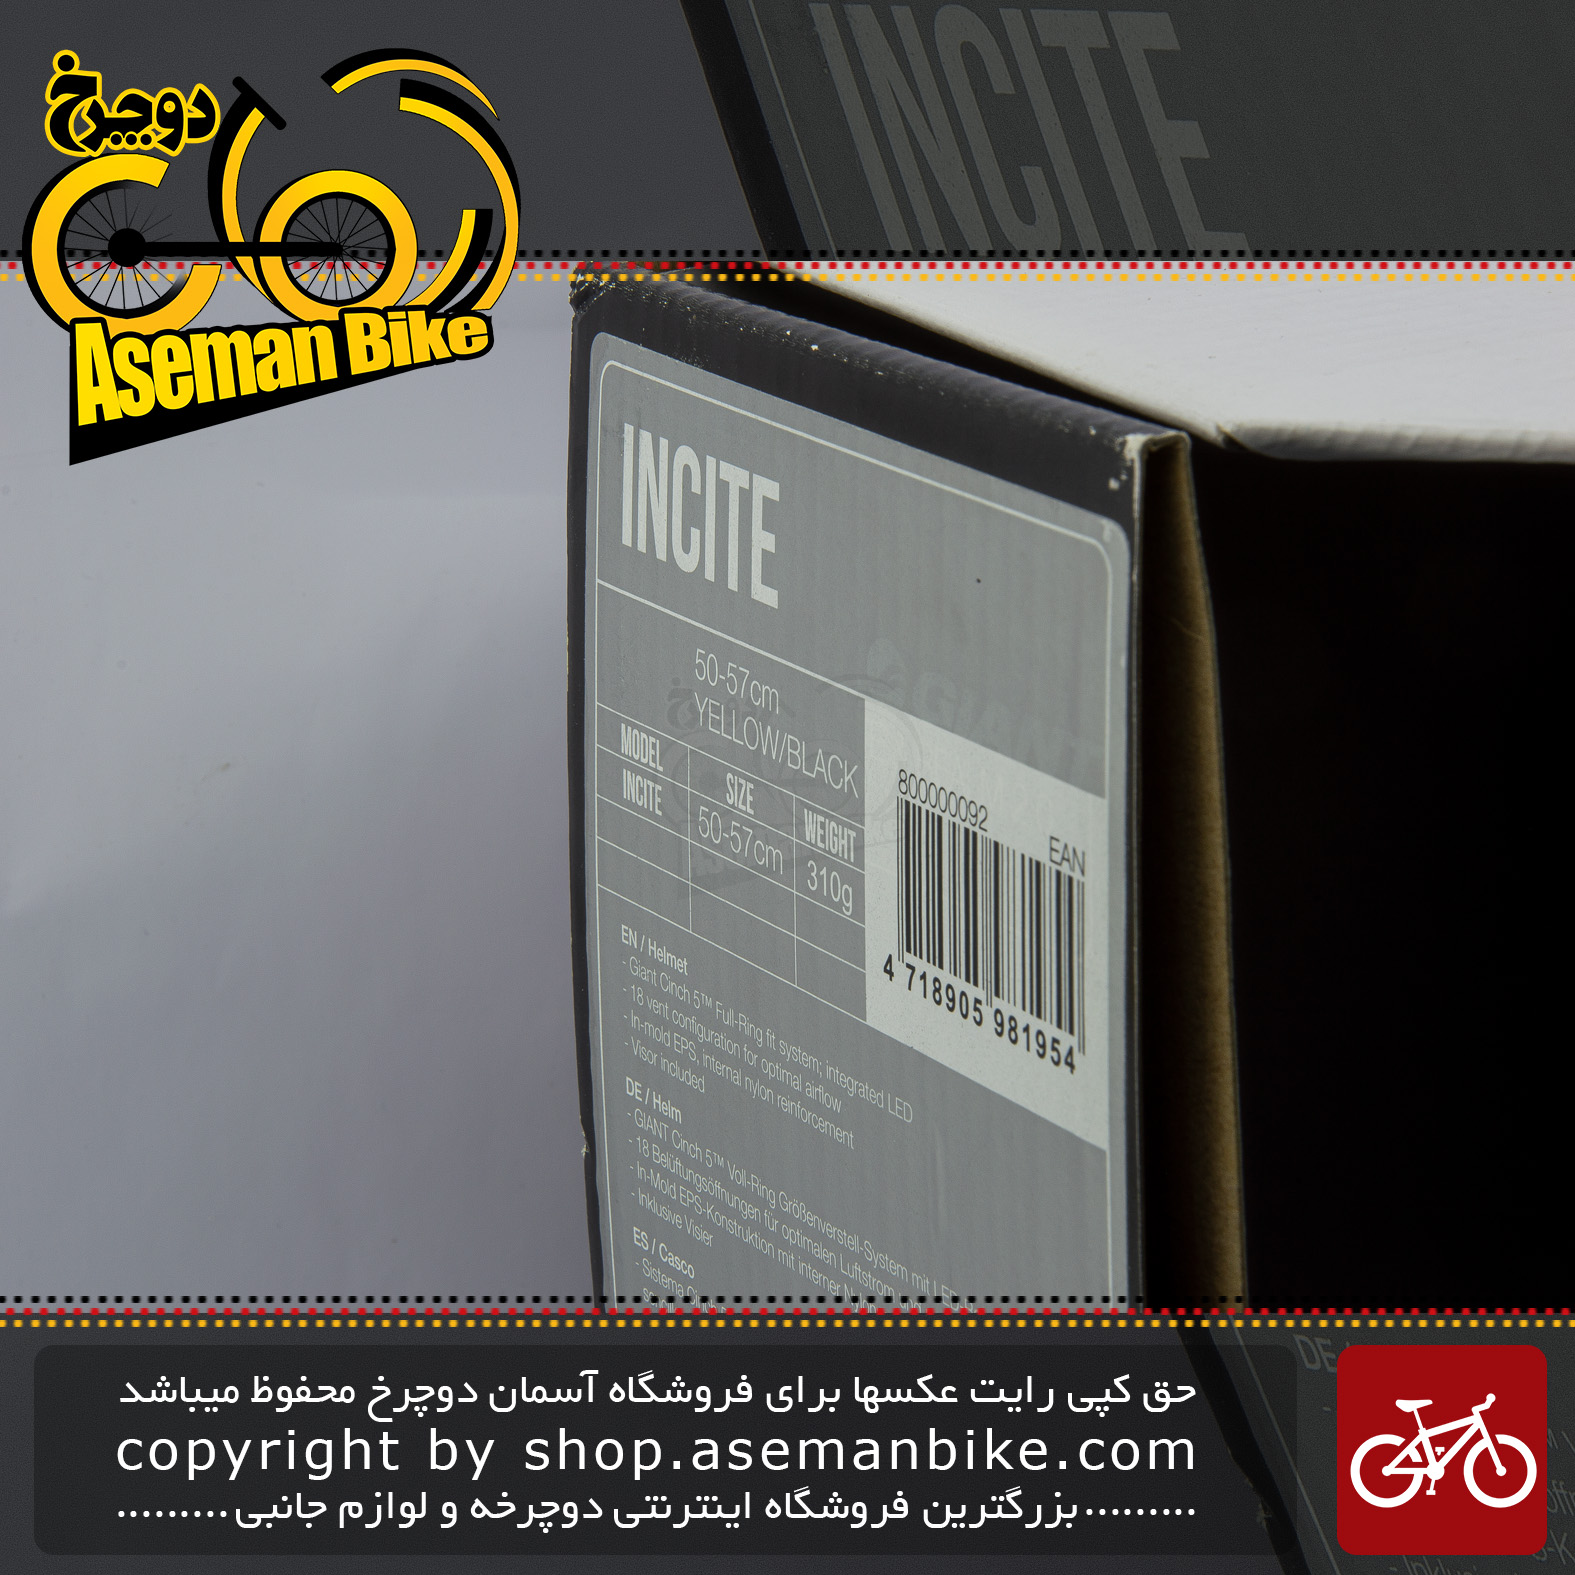 کلاه ايمني دوچرخه سواری شهری و کوهستان جاينت مدل اینسایت Helmet Bicycle Giant INCITE YELLOW BLACK 50 - 57 CM 